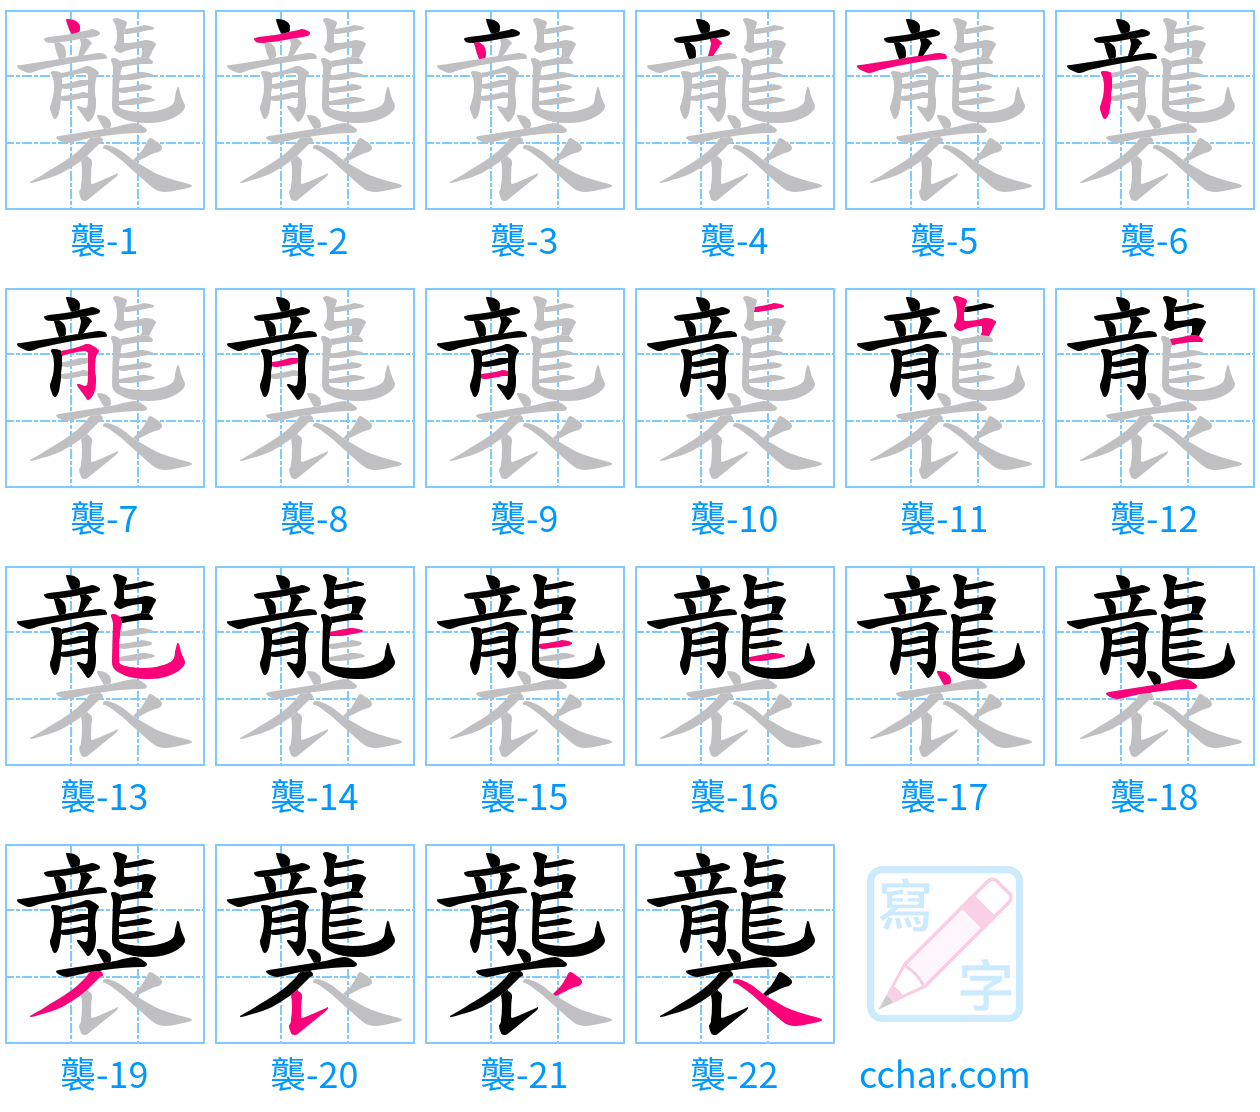 襲 stroke order step-by-step diagram